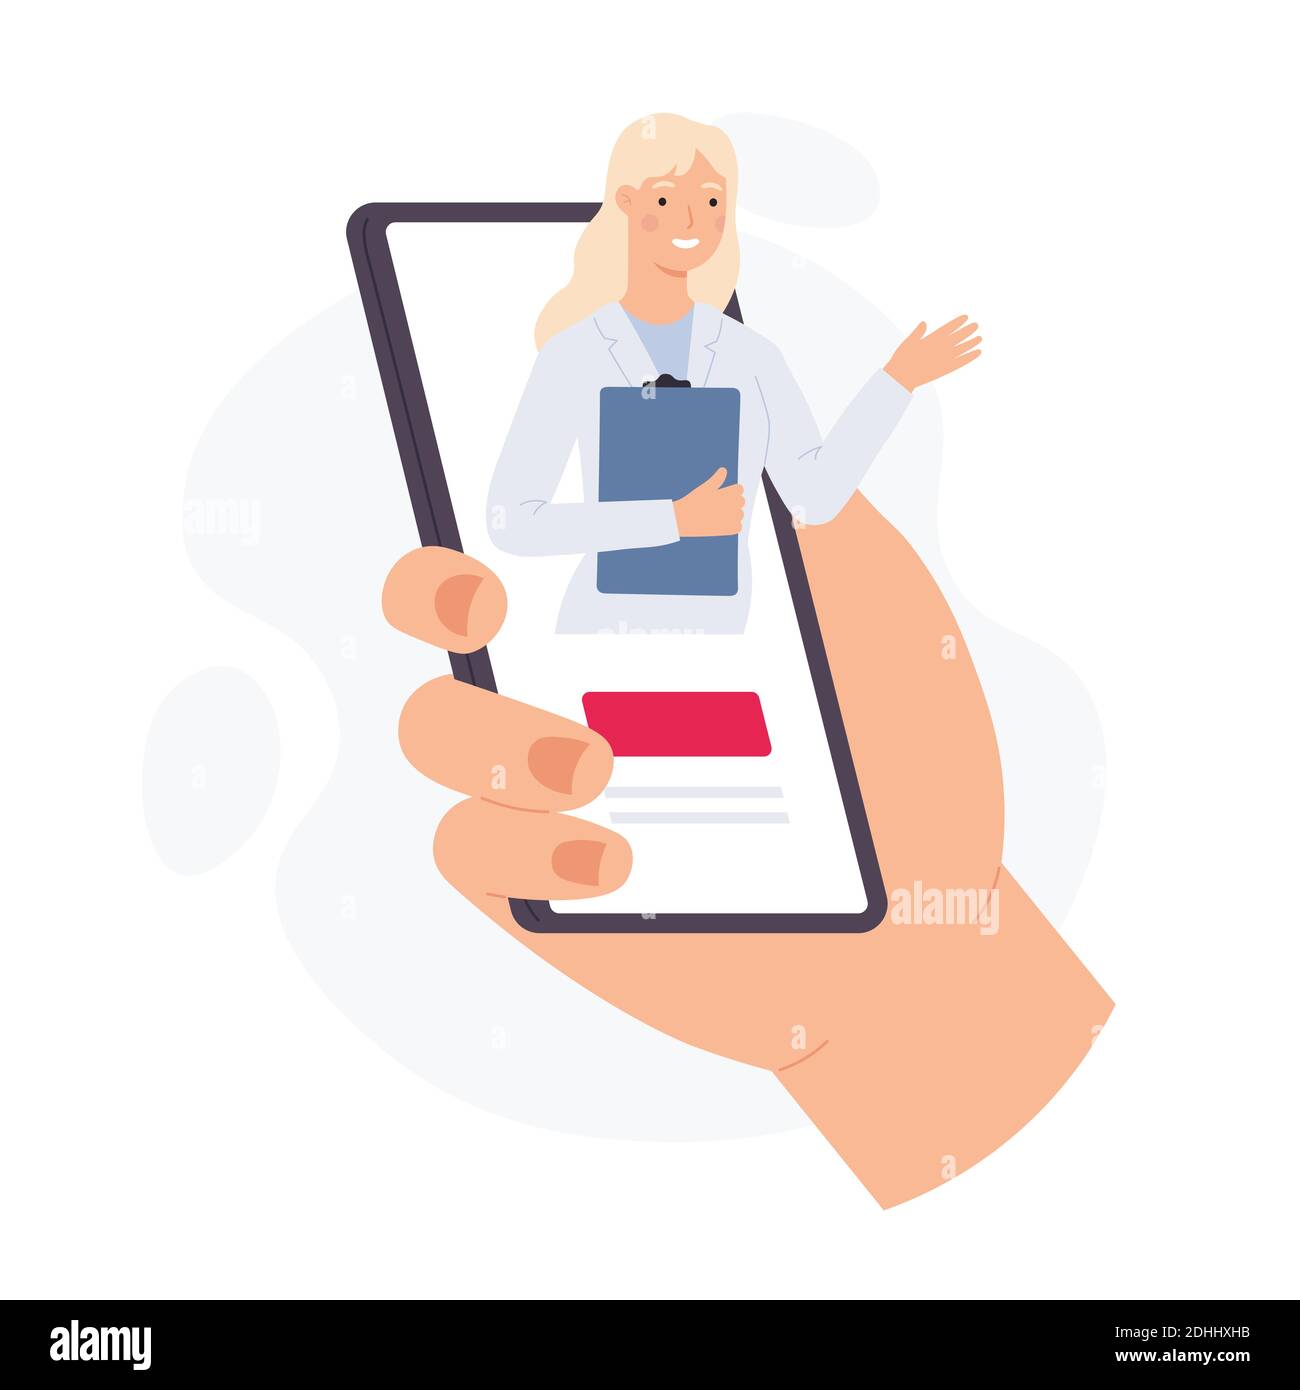 Smartphone mit Online-Arzt. Hand halten Telefon mit virtuellen Frau Sanitäter auf dem Bildschirm. Medizinische mobile App für Gesundheitsberatung Vektor-Konzept Stock Vektor